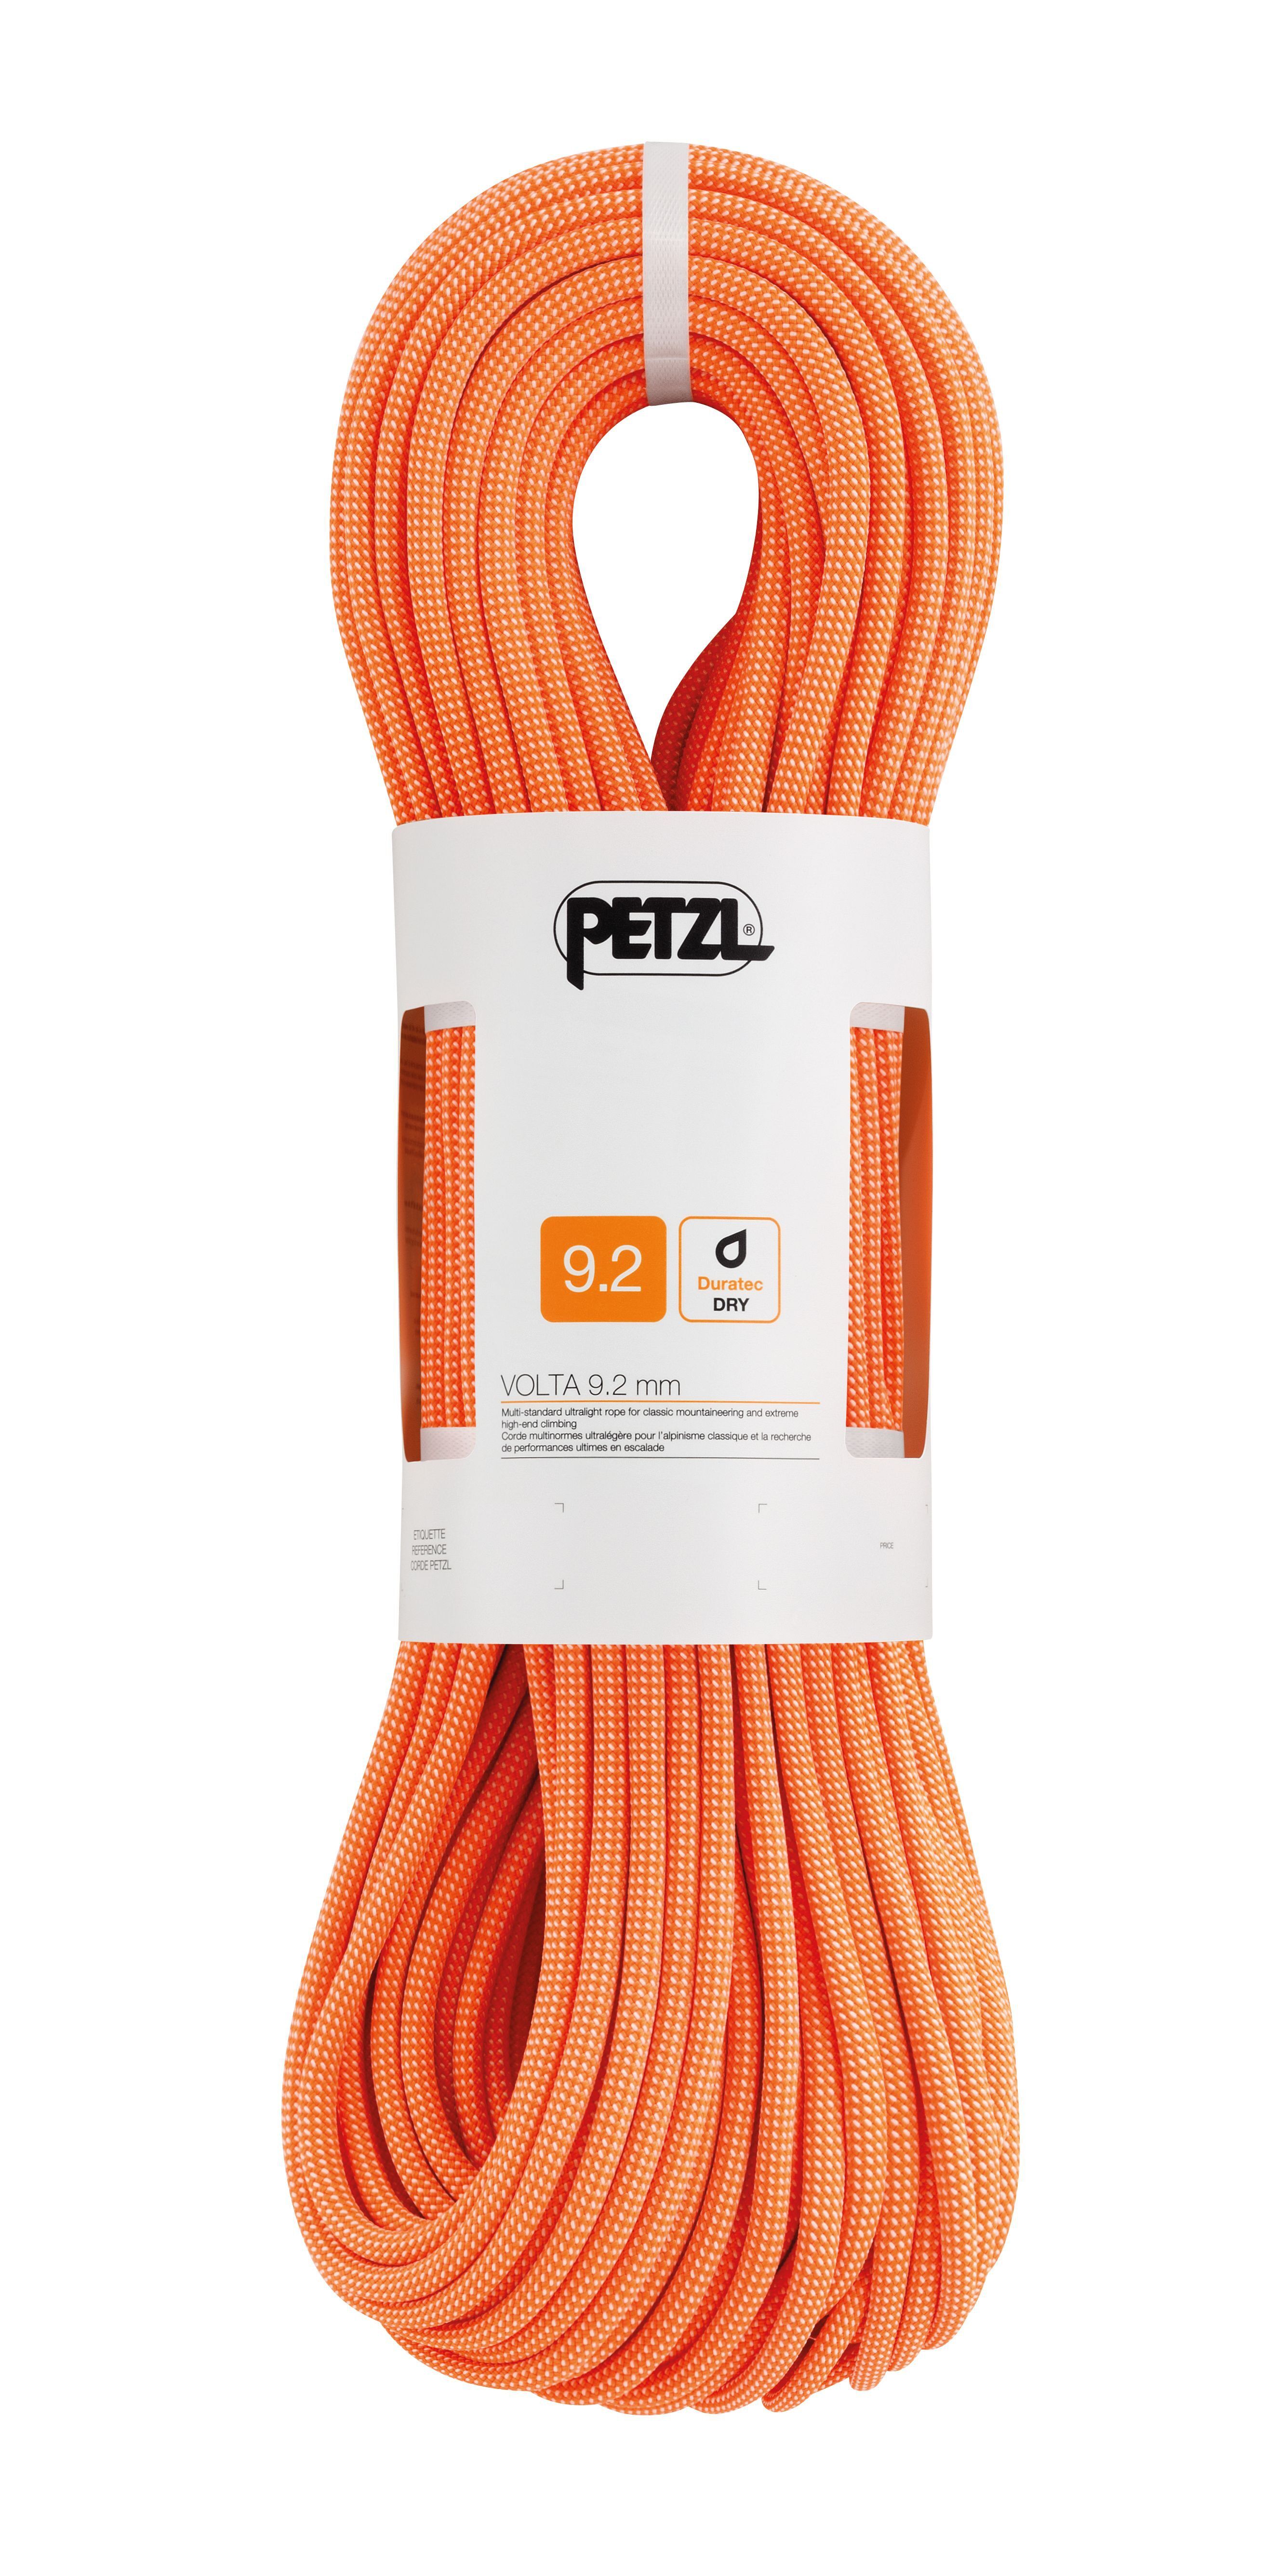 Petzl - Volta 9,2 mm - Cuerda de escalada